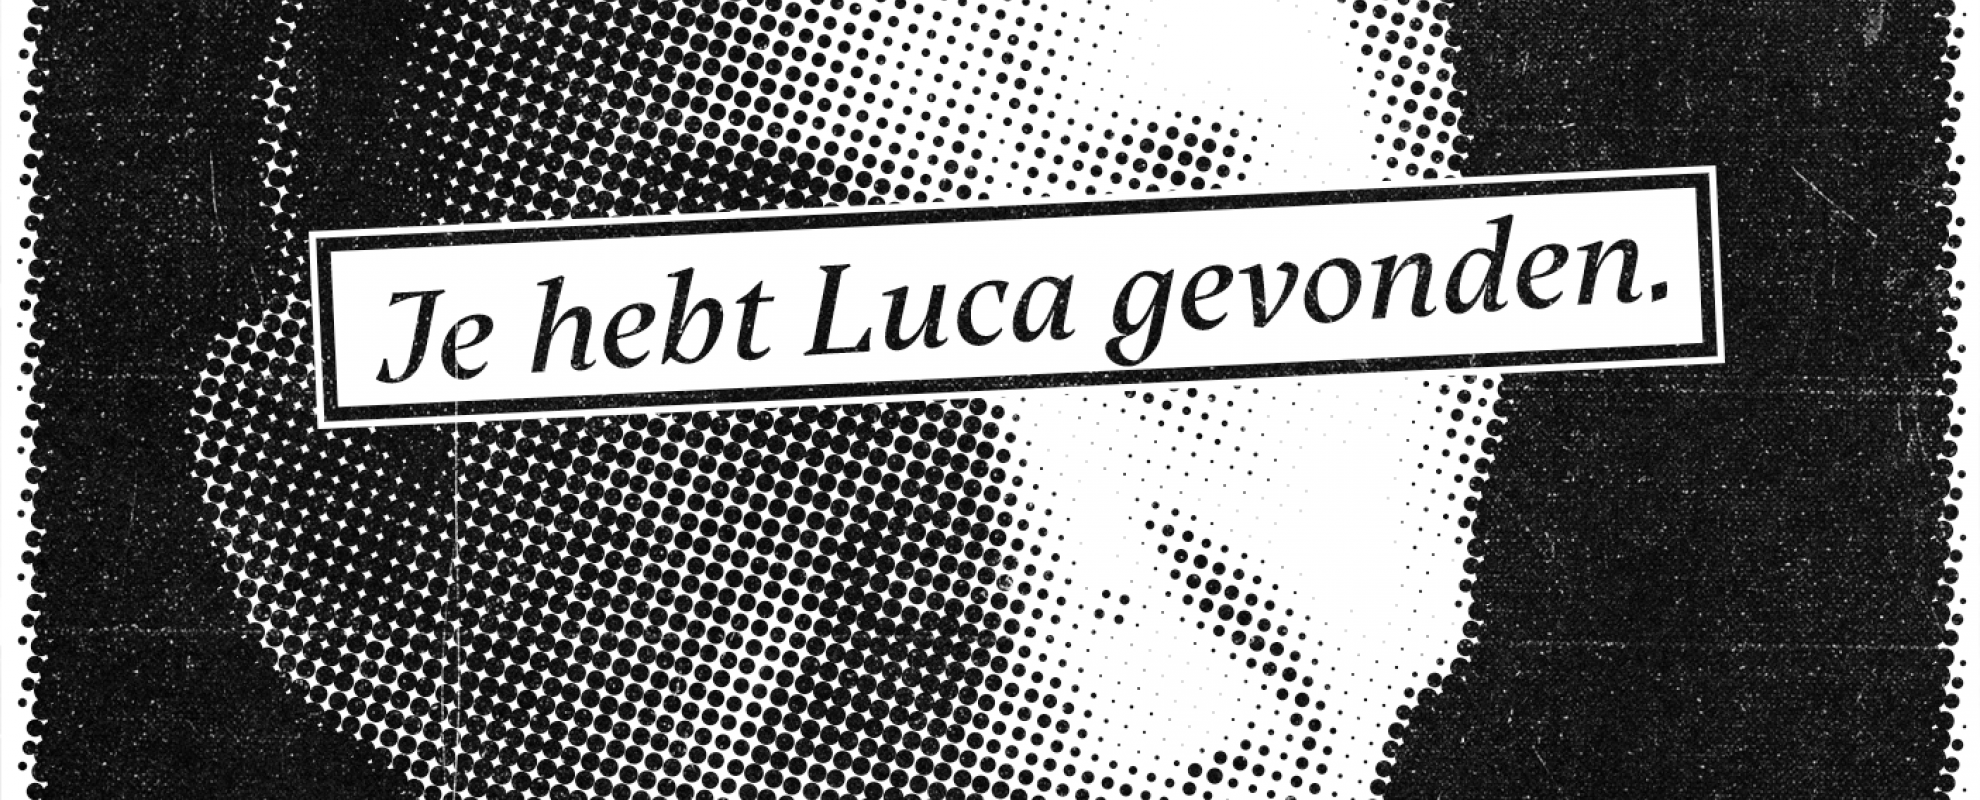 Luca - iedereen is een activist